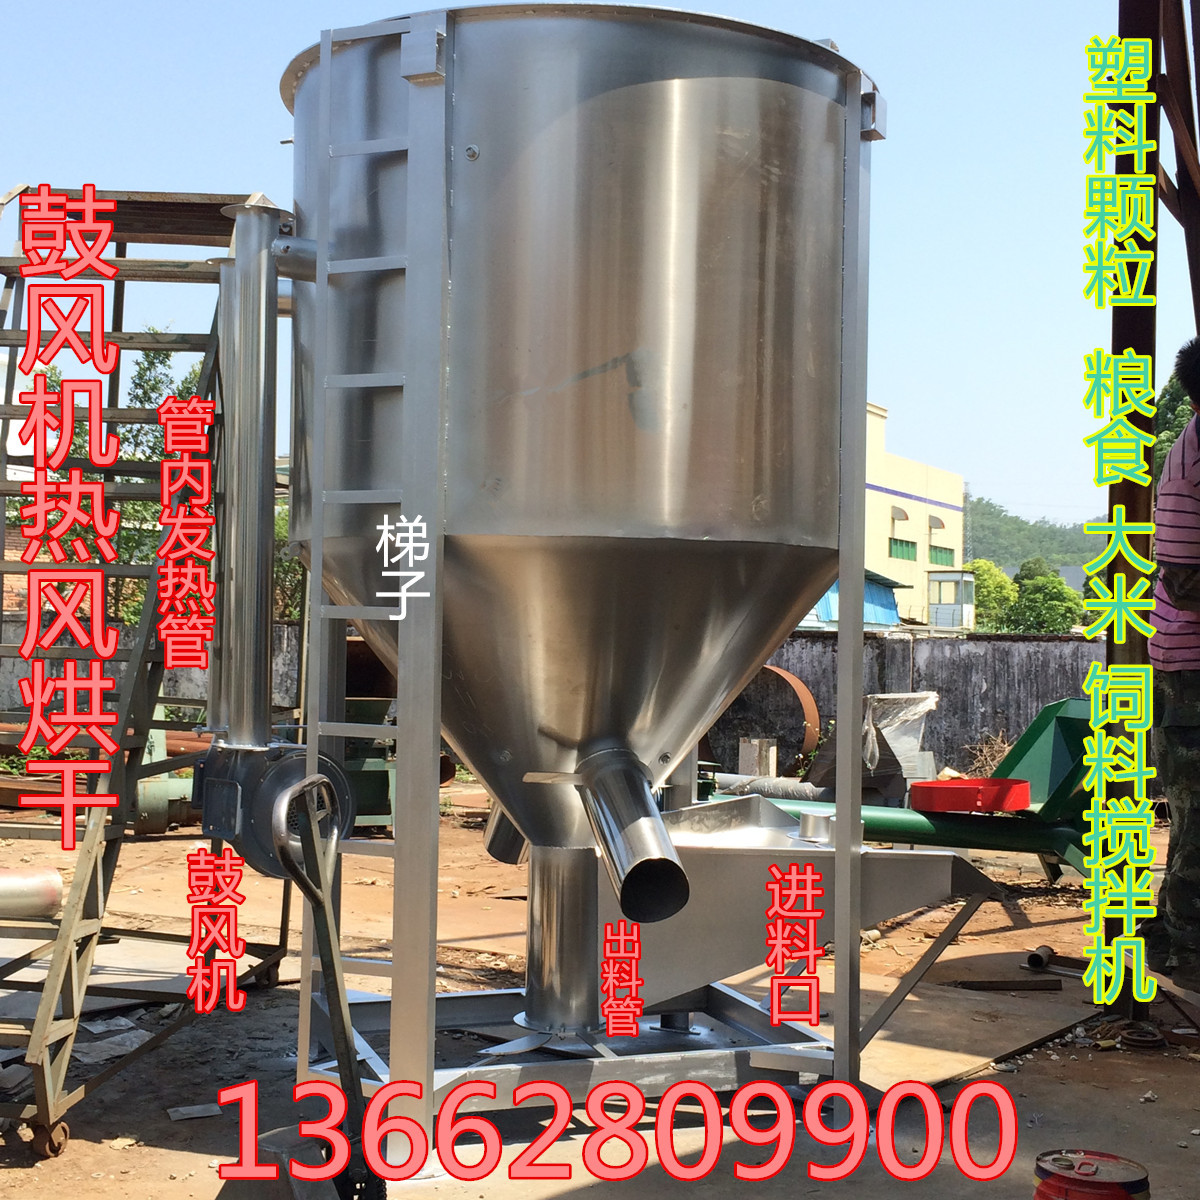 供应304不锈钢搅拌机 大米混合搅拌机图片 饲料颗粒搅拌机